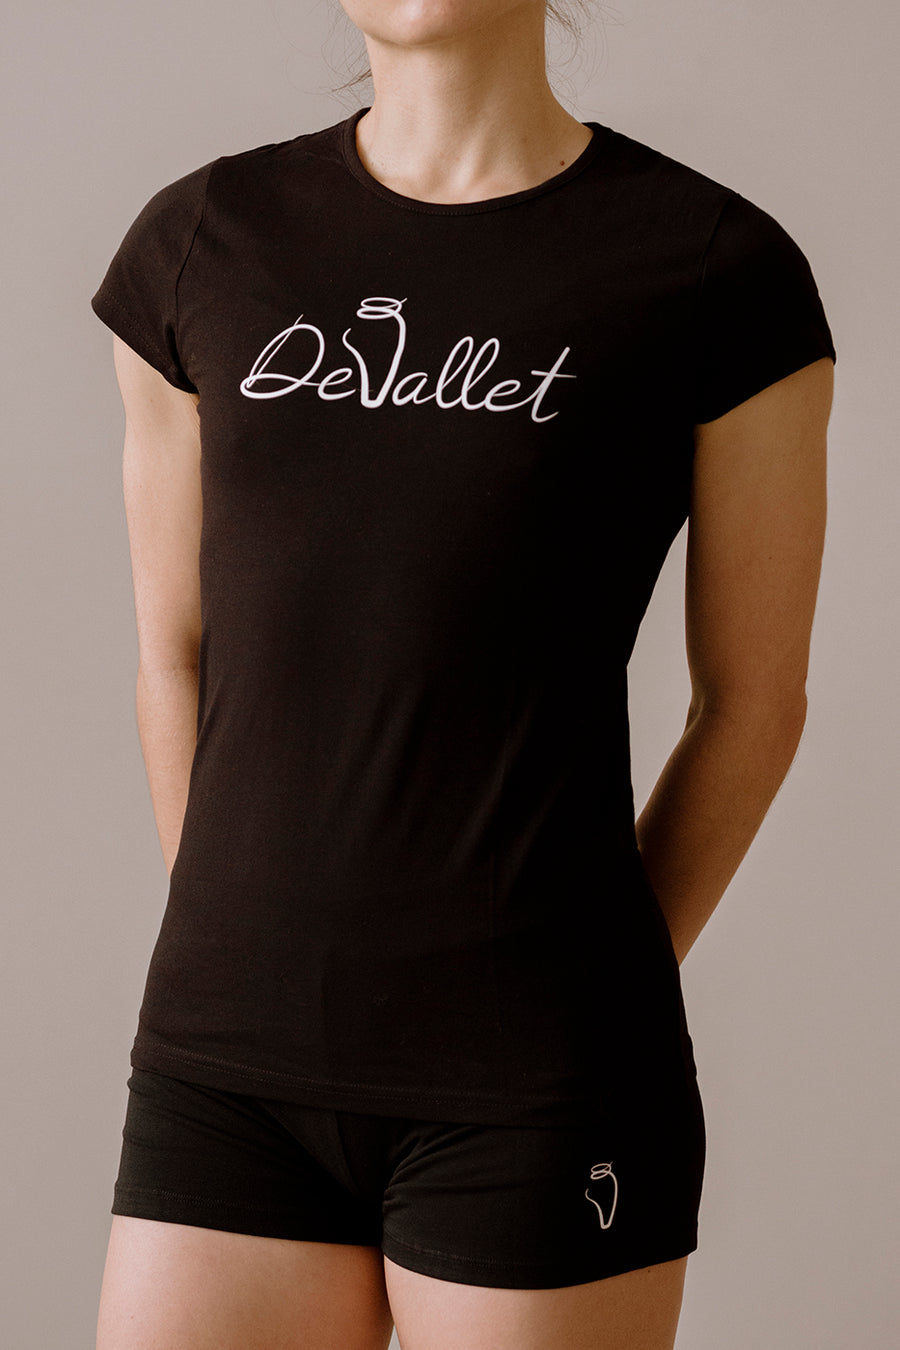 Camiseta DeVallet - DeVallet